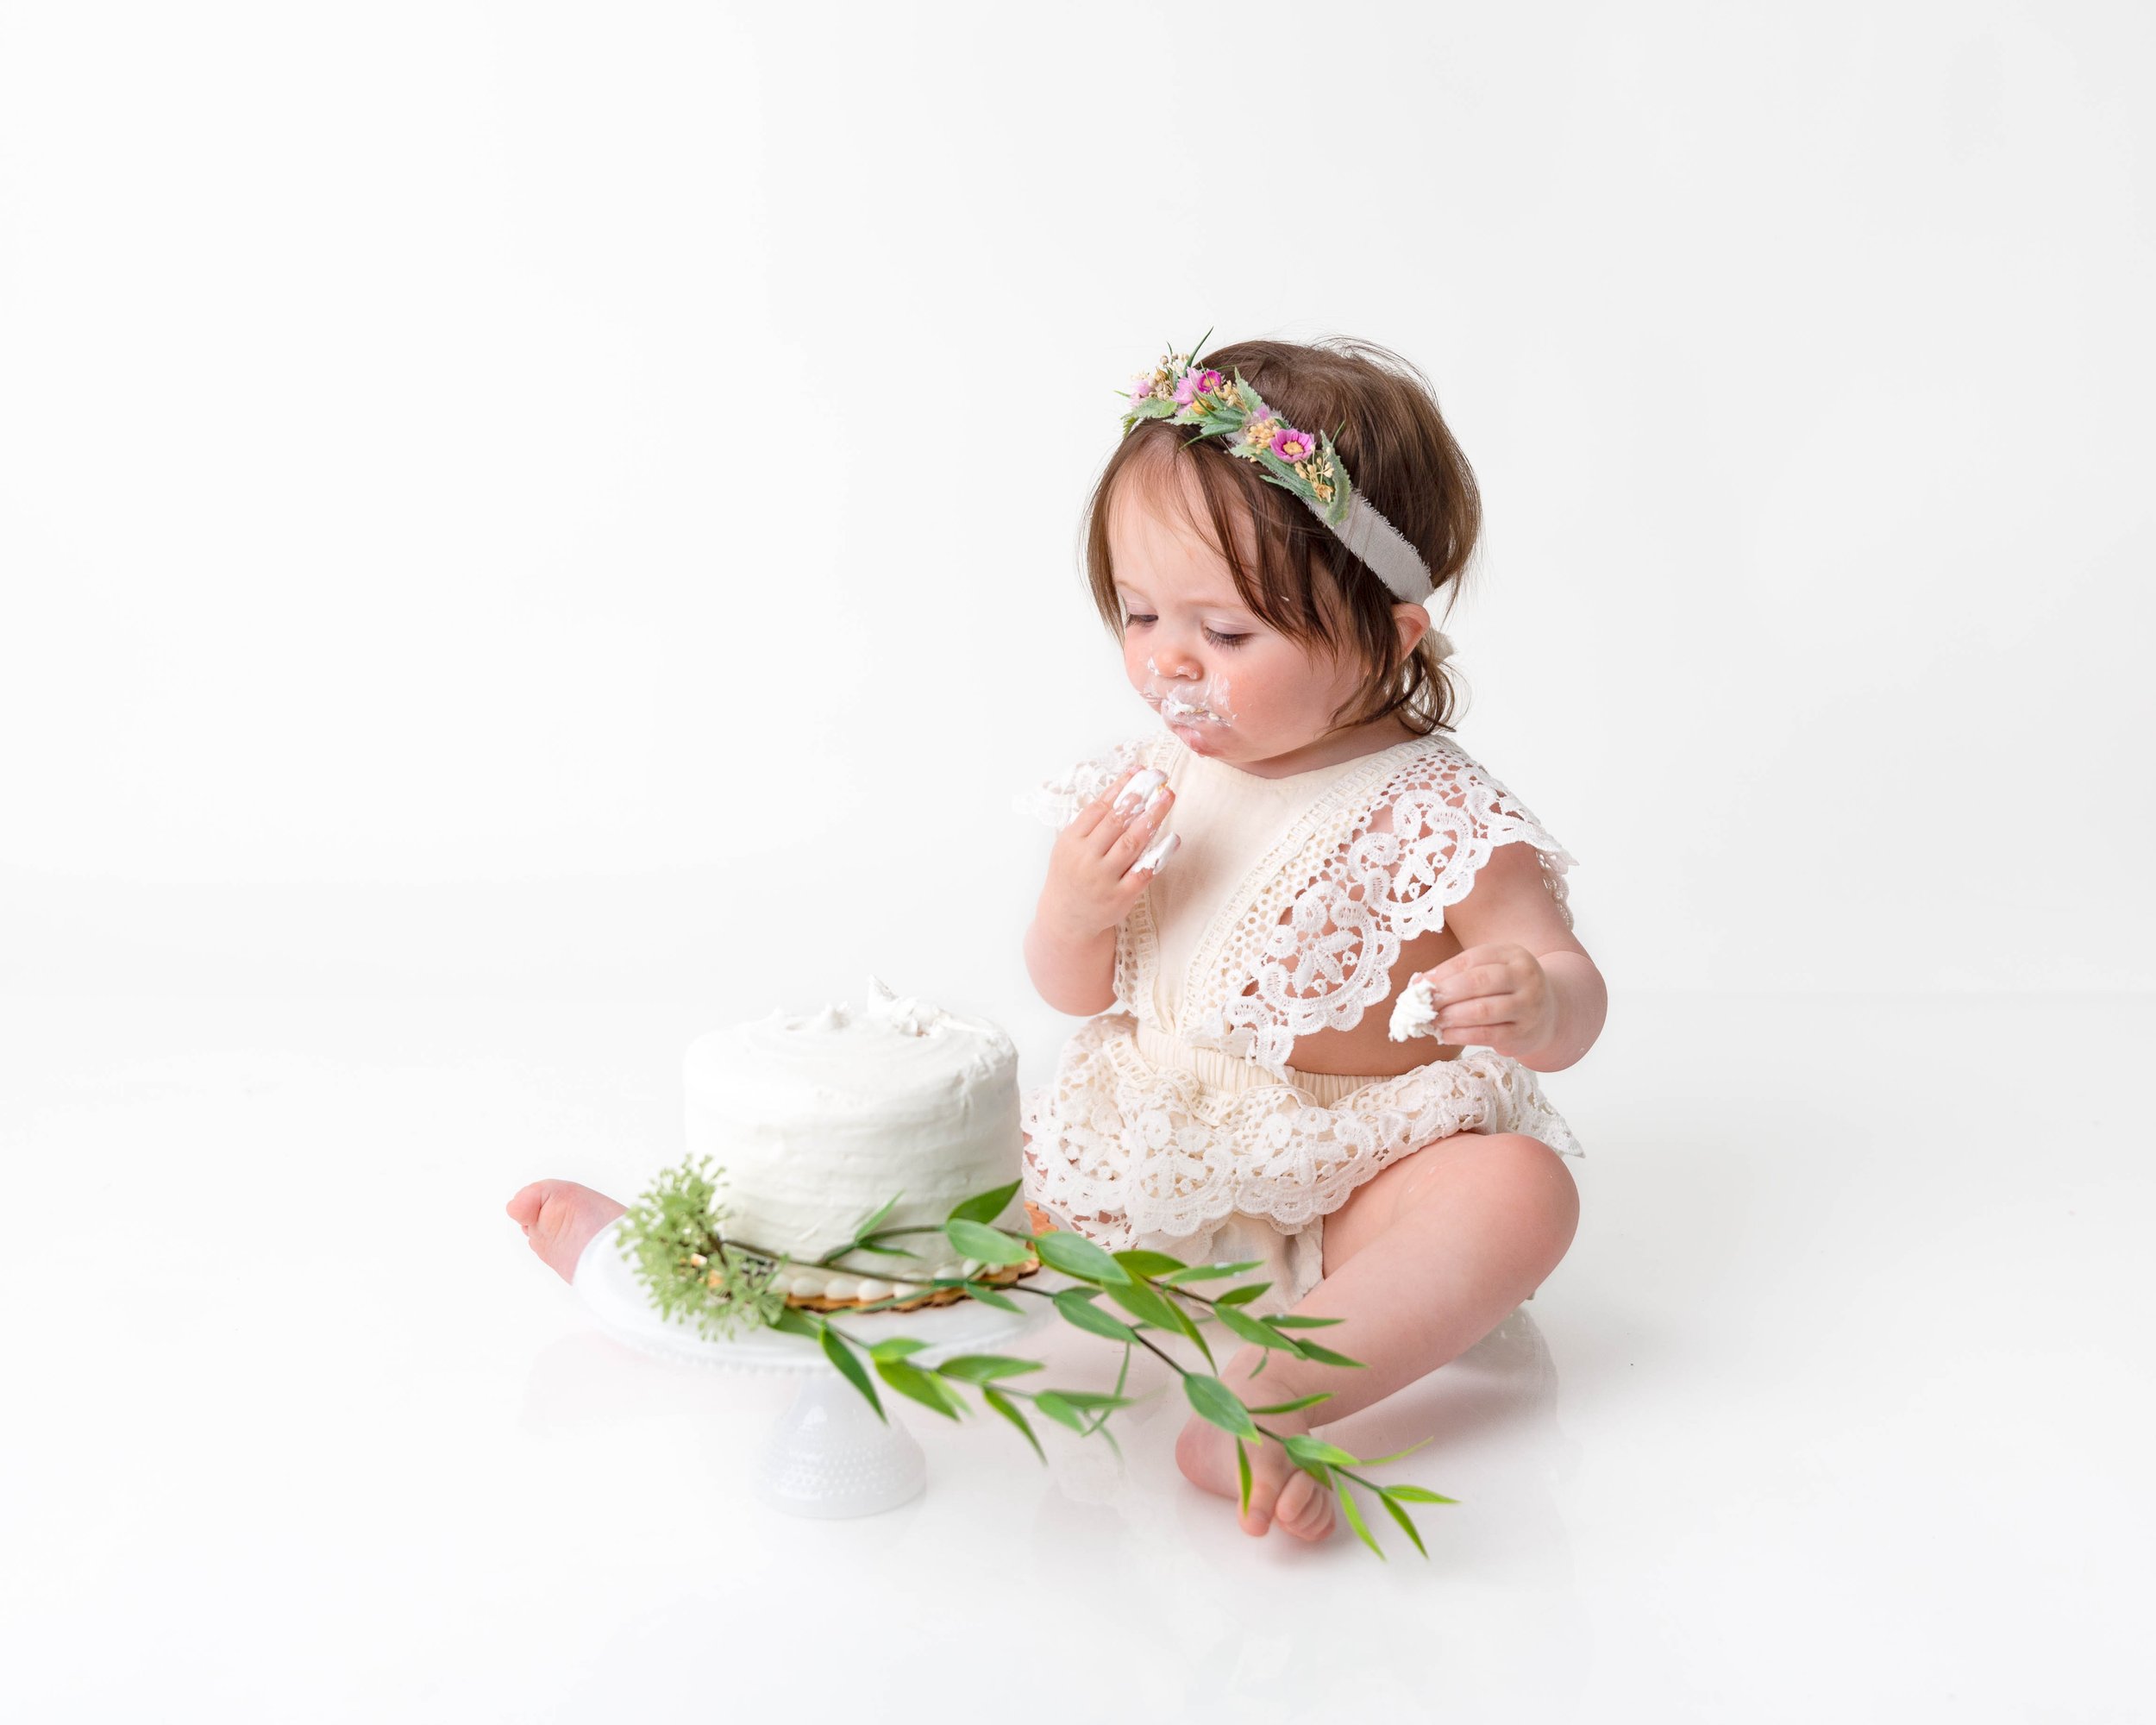 Cake-smash-one-year-old-photos-milestone-images-newborn-photography-baby-girl-spokane-washington-3.jpg